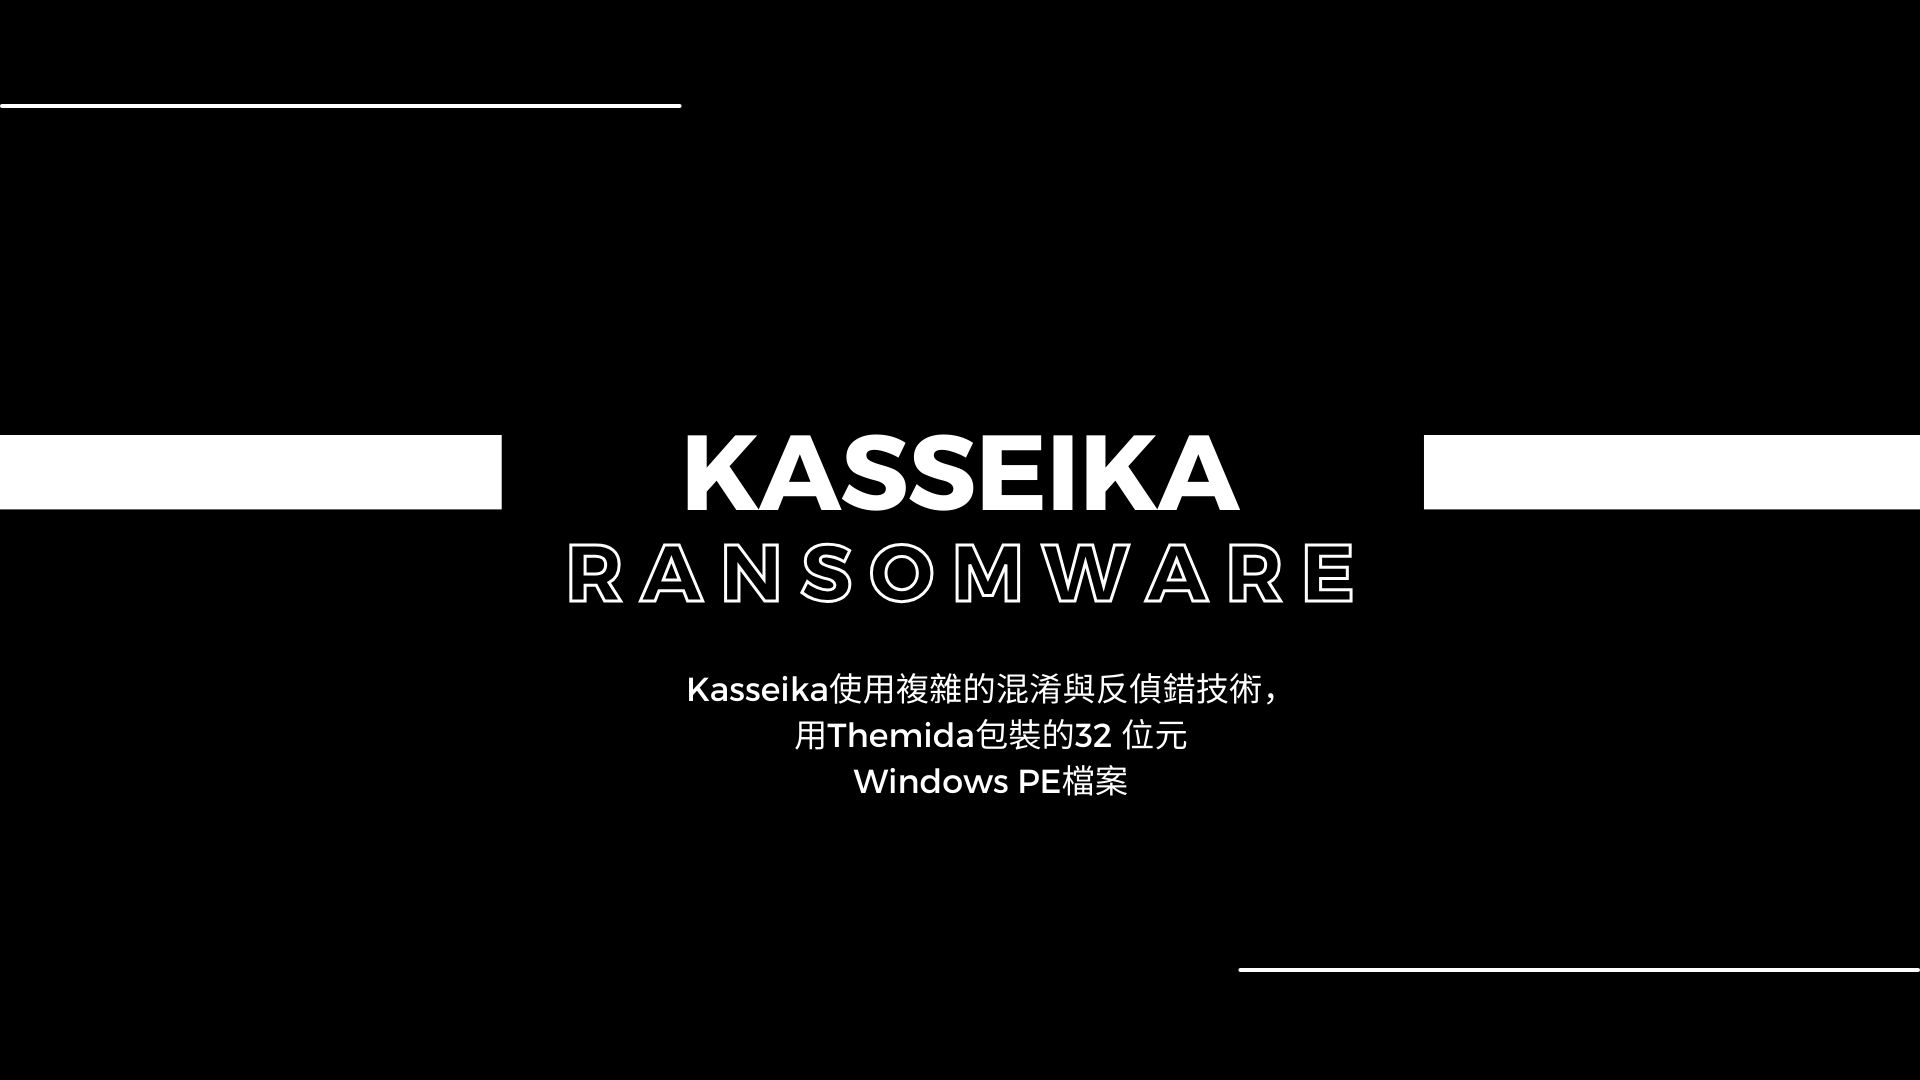 Kasseika 勒索軟體透過BYOVD技術在加密前先停用防毒軟體